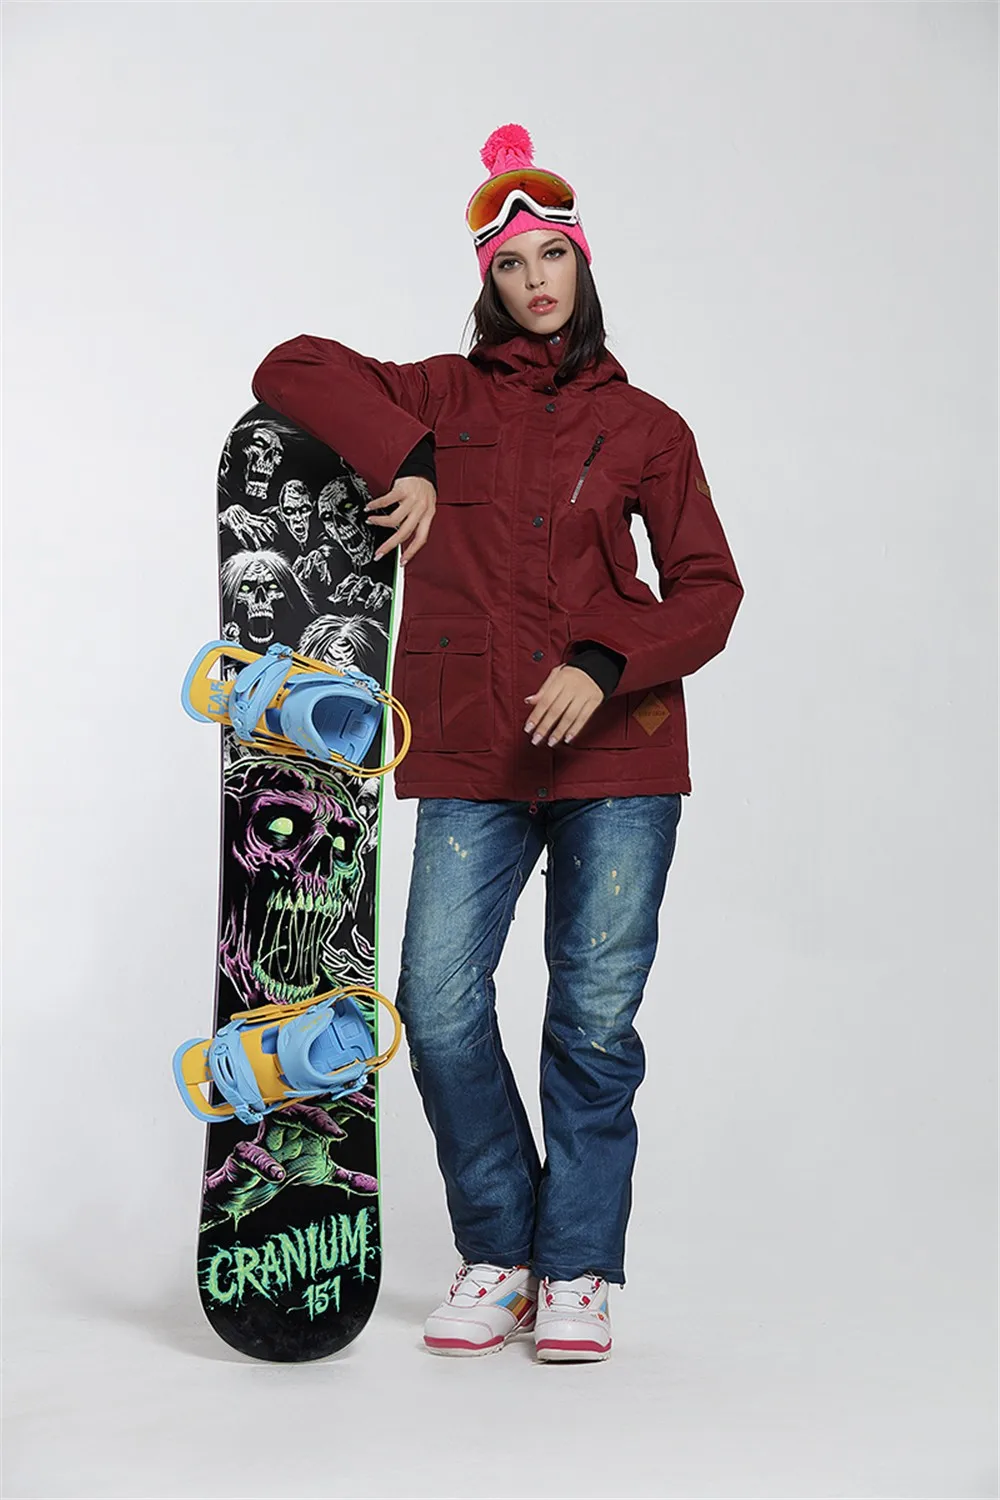 GSOU лыжная куртка женская зимняя теплая камуфляжная куртка для сноуборда водонепроницаемая ветрозащитная женская уличная лыжная куртка лыжный костюм